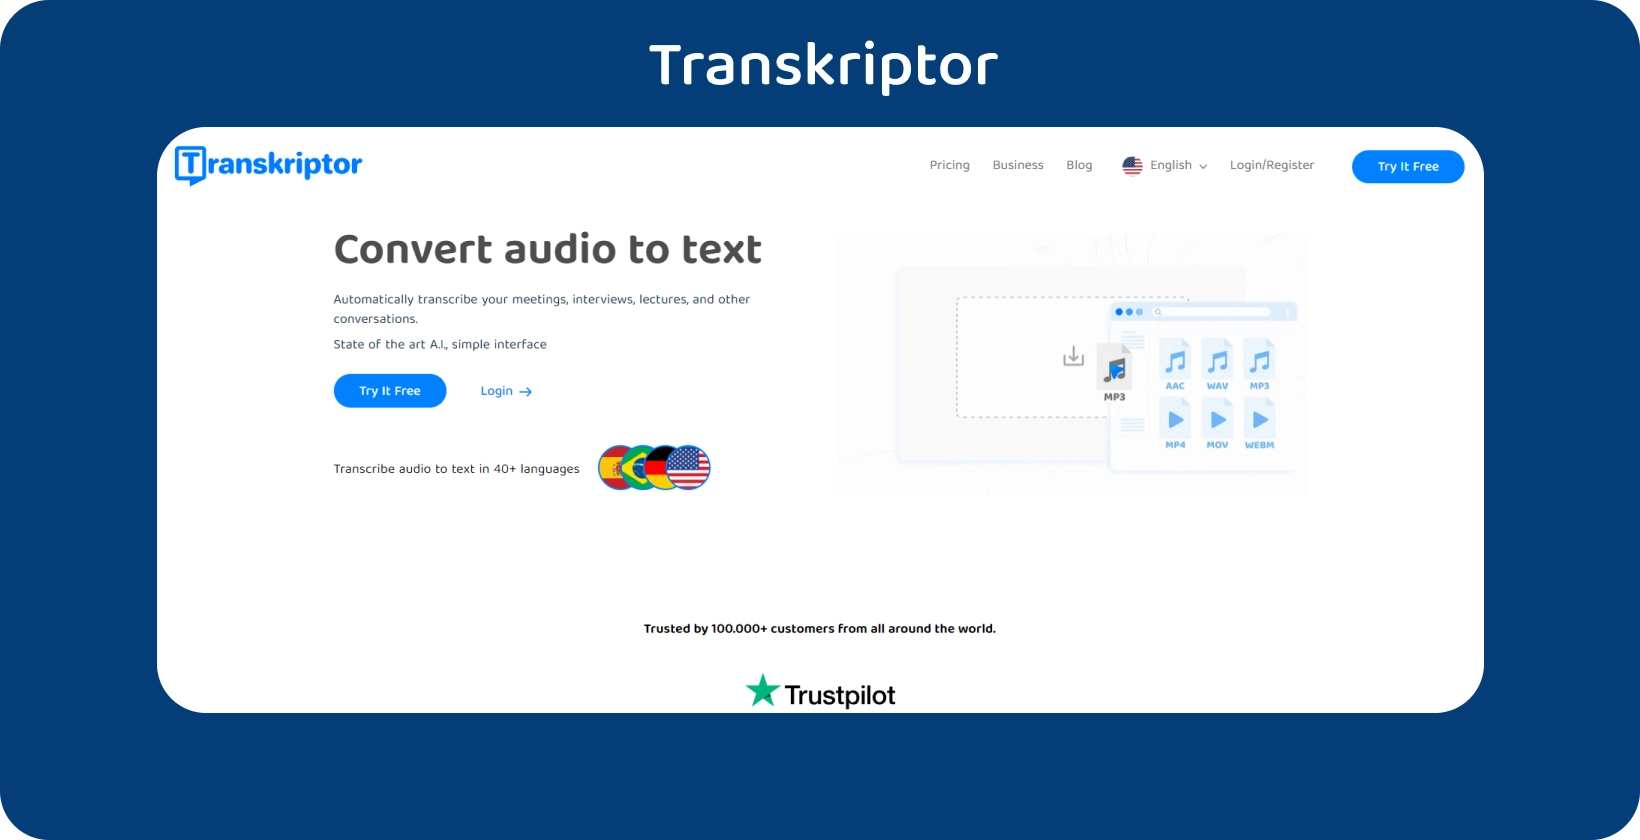 Transkriptor beranda dengan ajakan bertindak yang jelas, menawarkan layanan transkripsi audio ke teks.